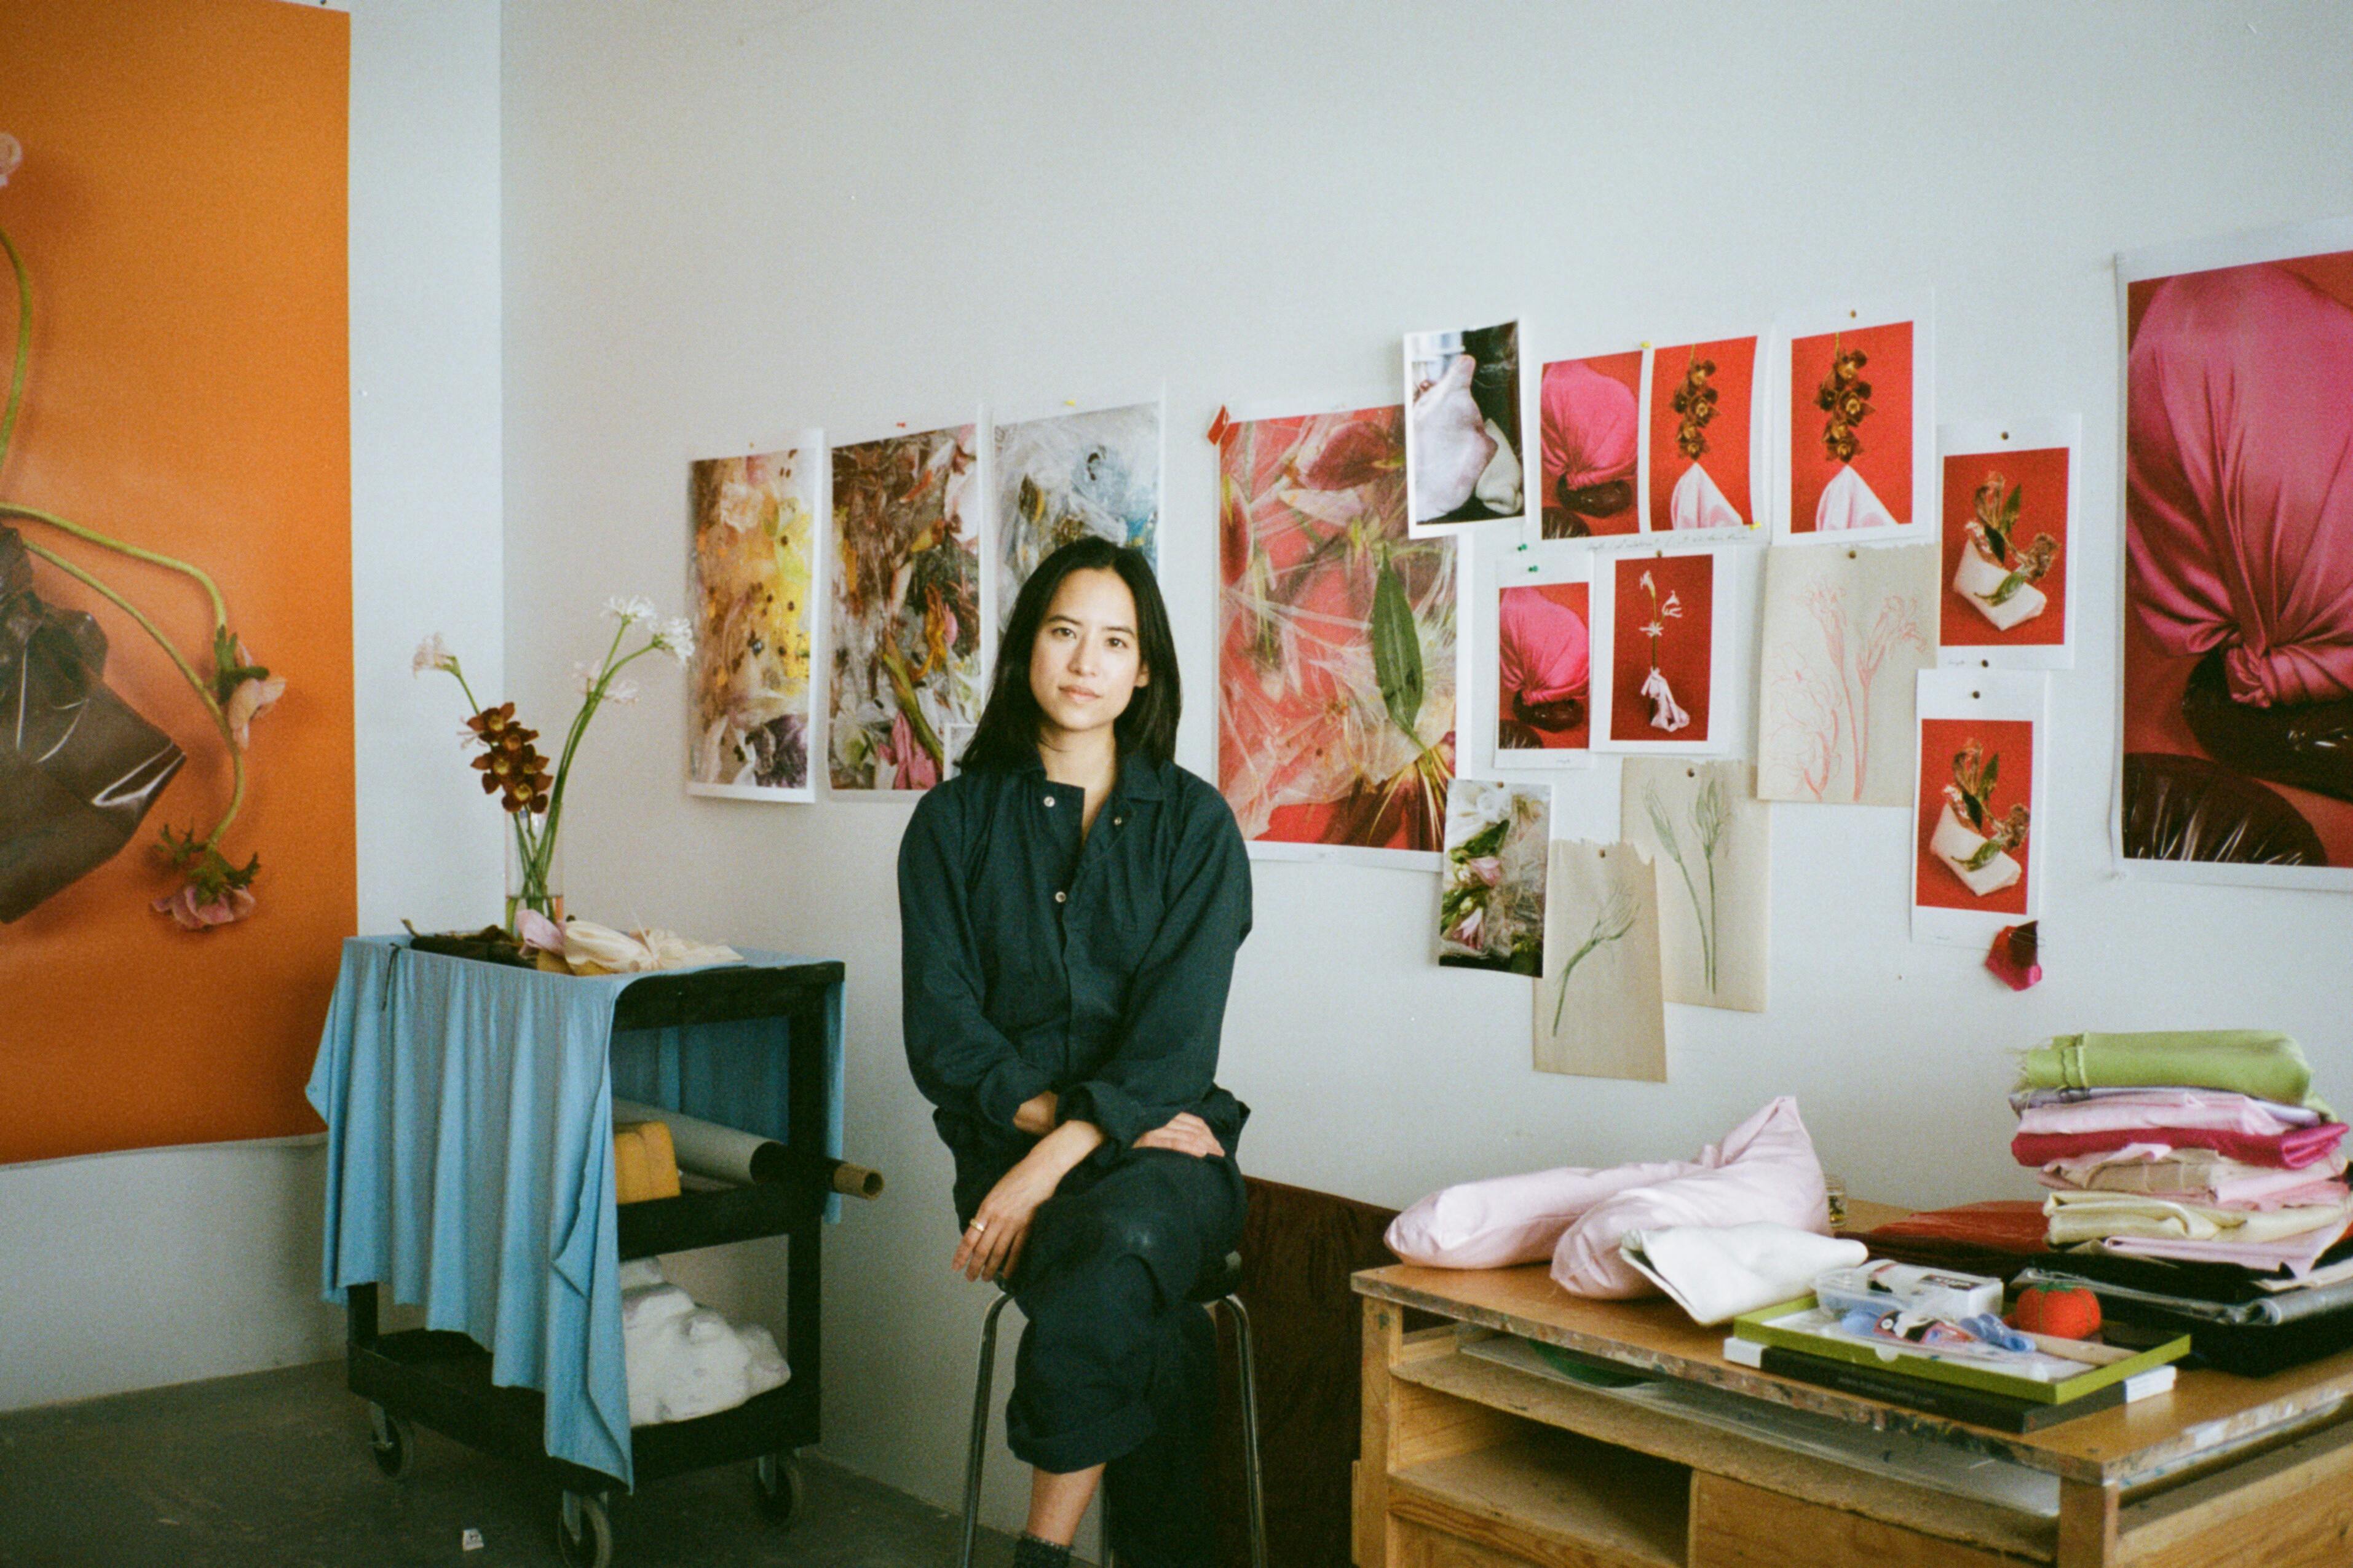 A portrait of Michelle Bui